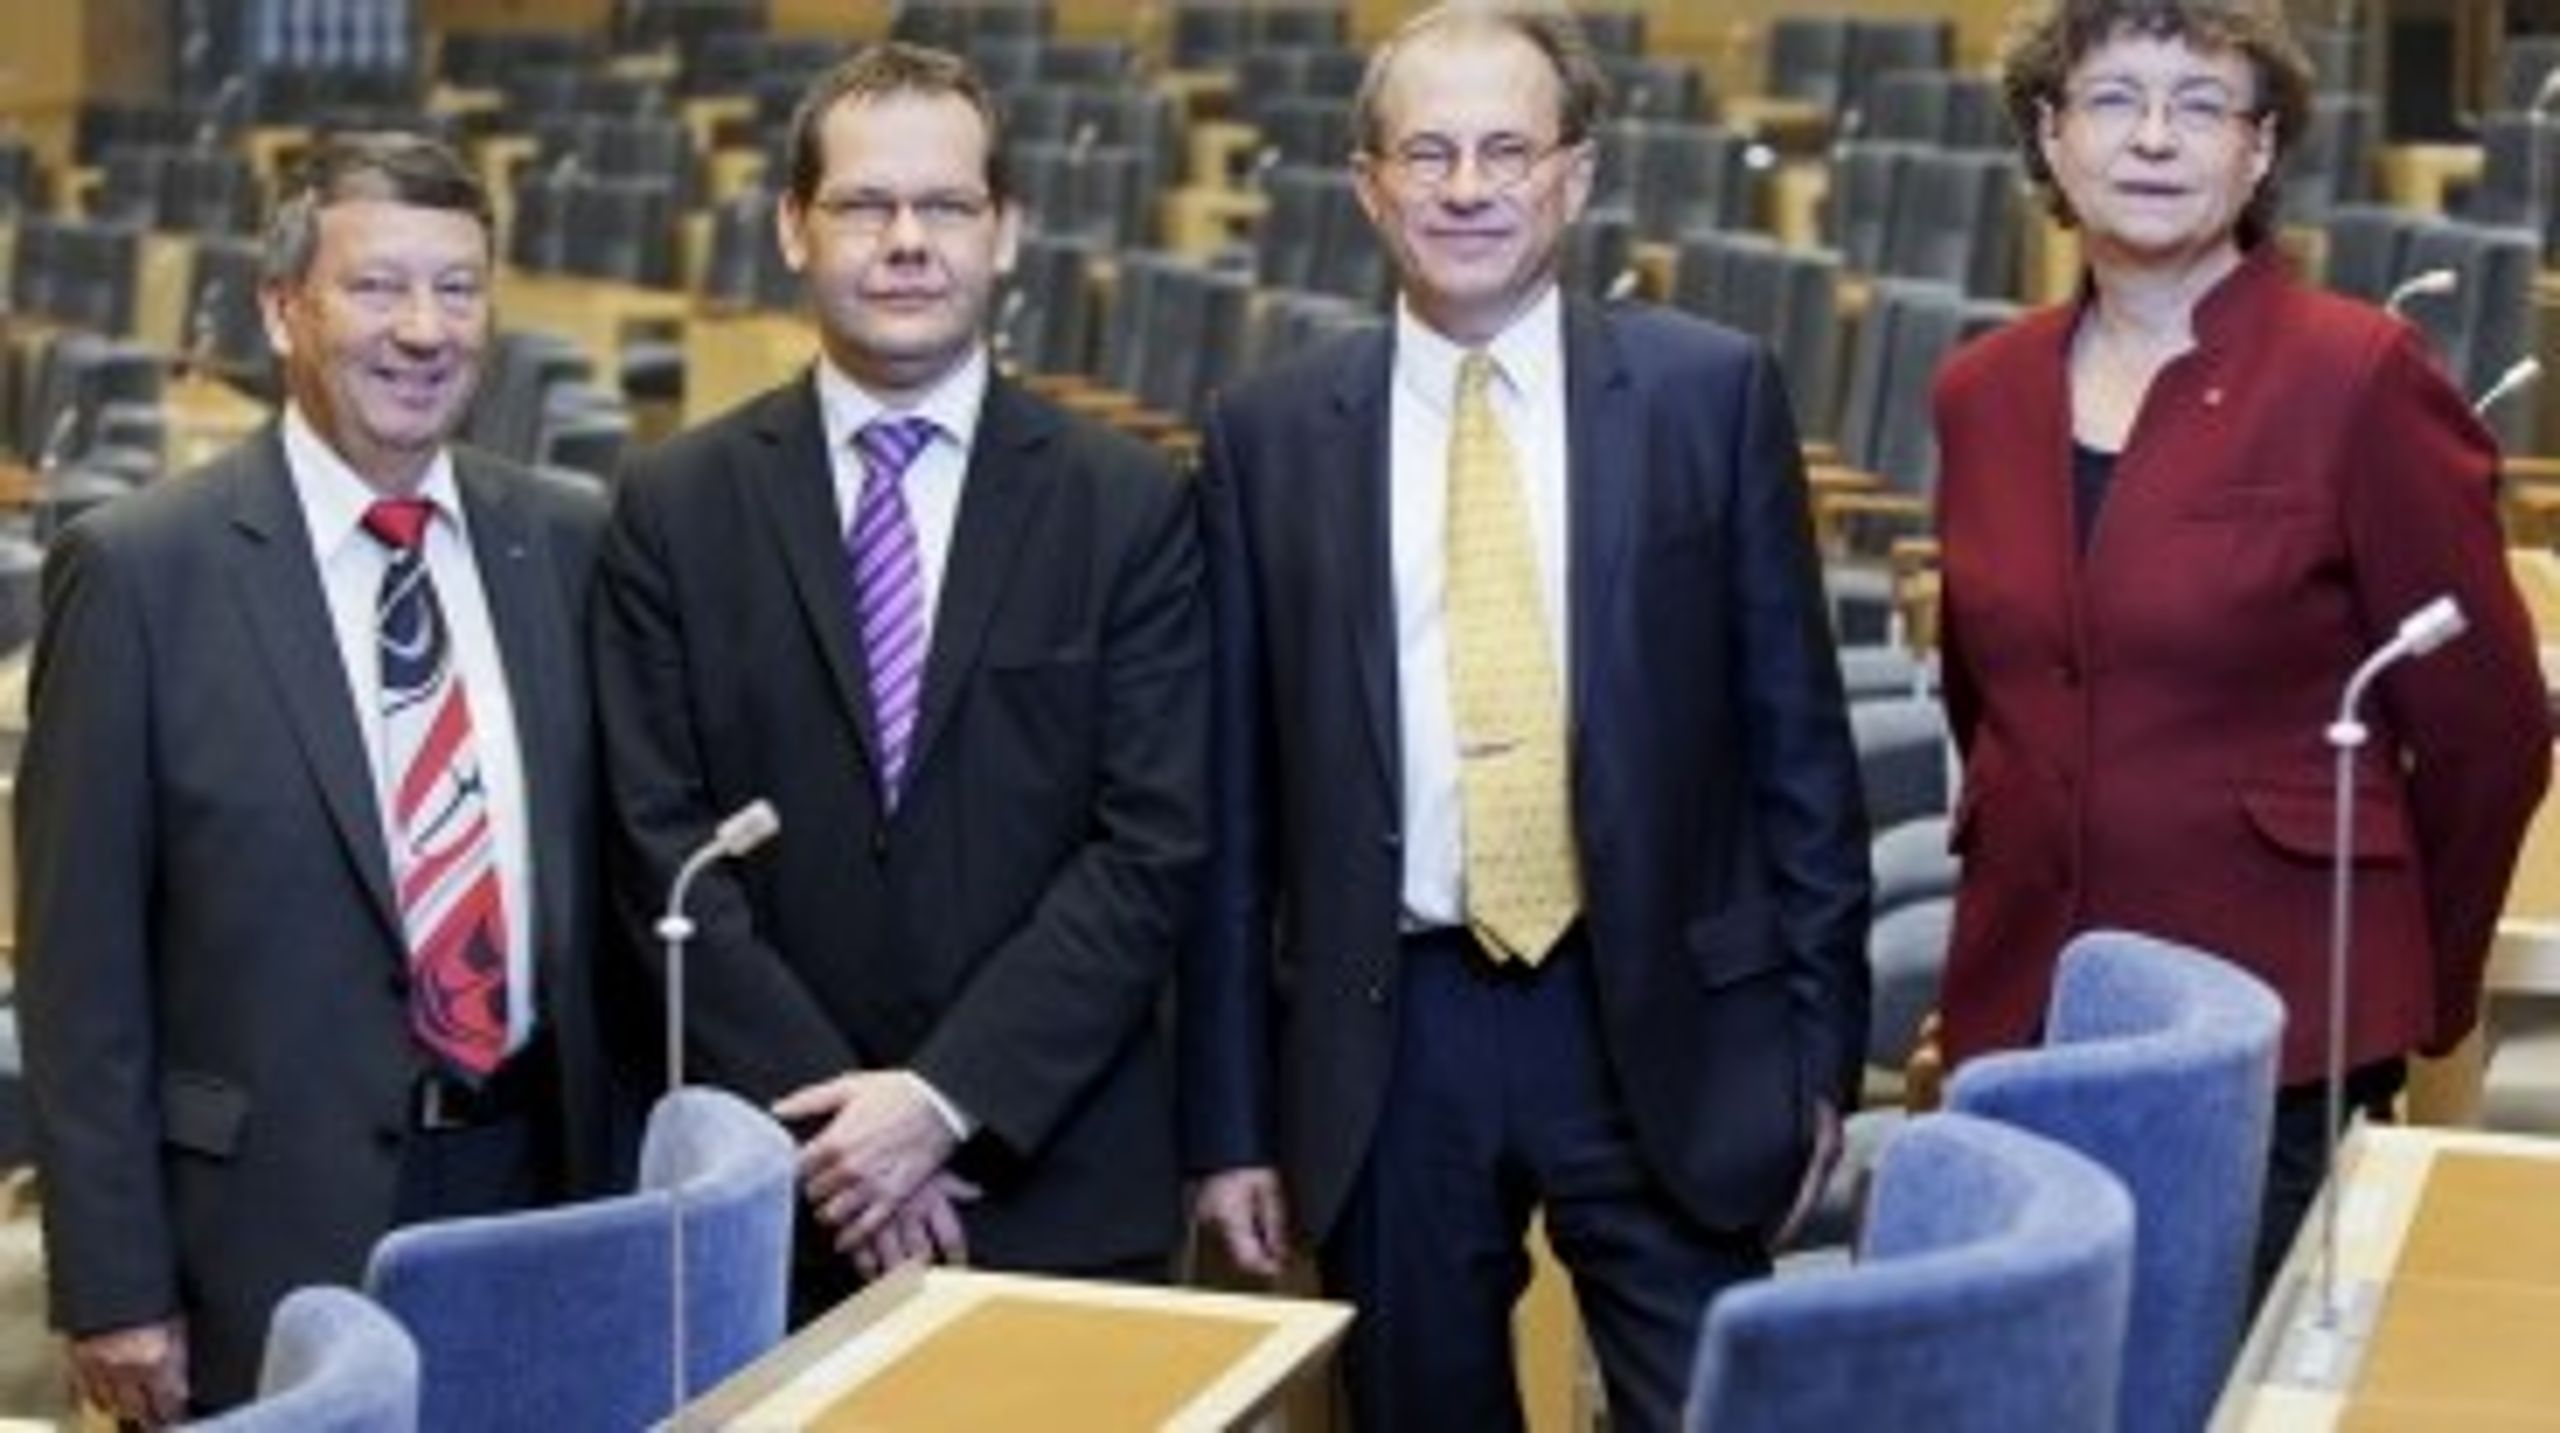 De fyra talmännen, eller riksdagen presidium,&nbsp;tredje vice talman Jan Ertsborn (FP), andre vice talman Ulf Holm (MP), talman Per Westerberg (M) och förste vice talman Susanne Eberstein (S).